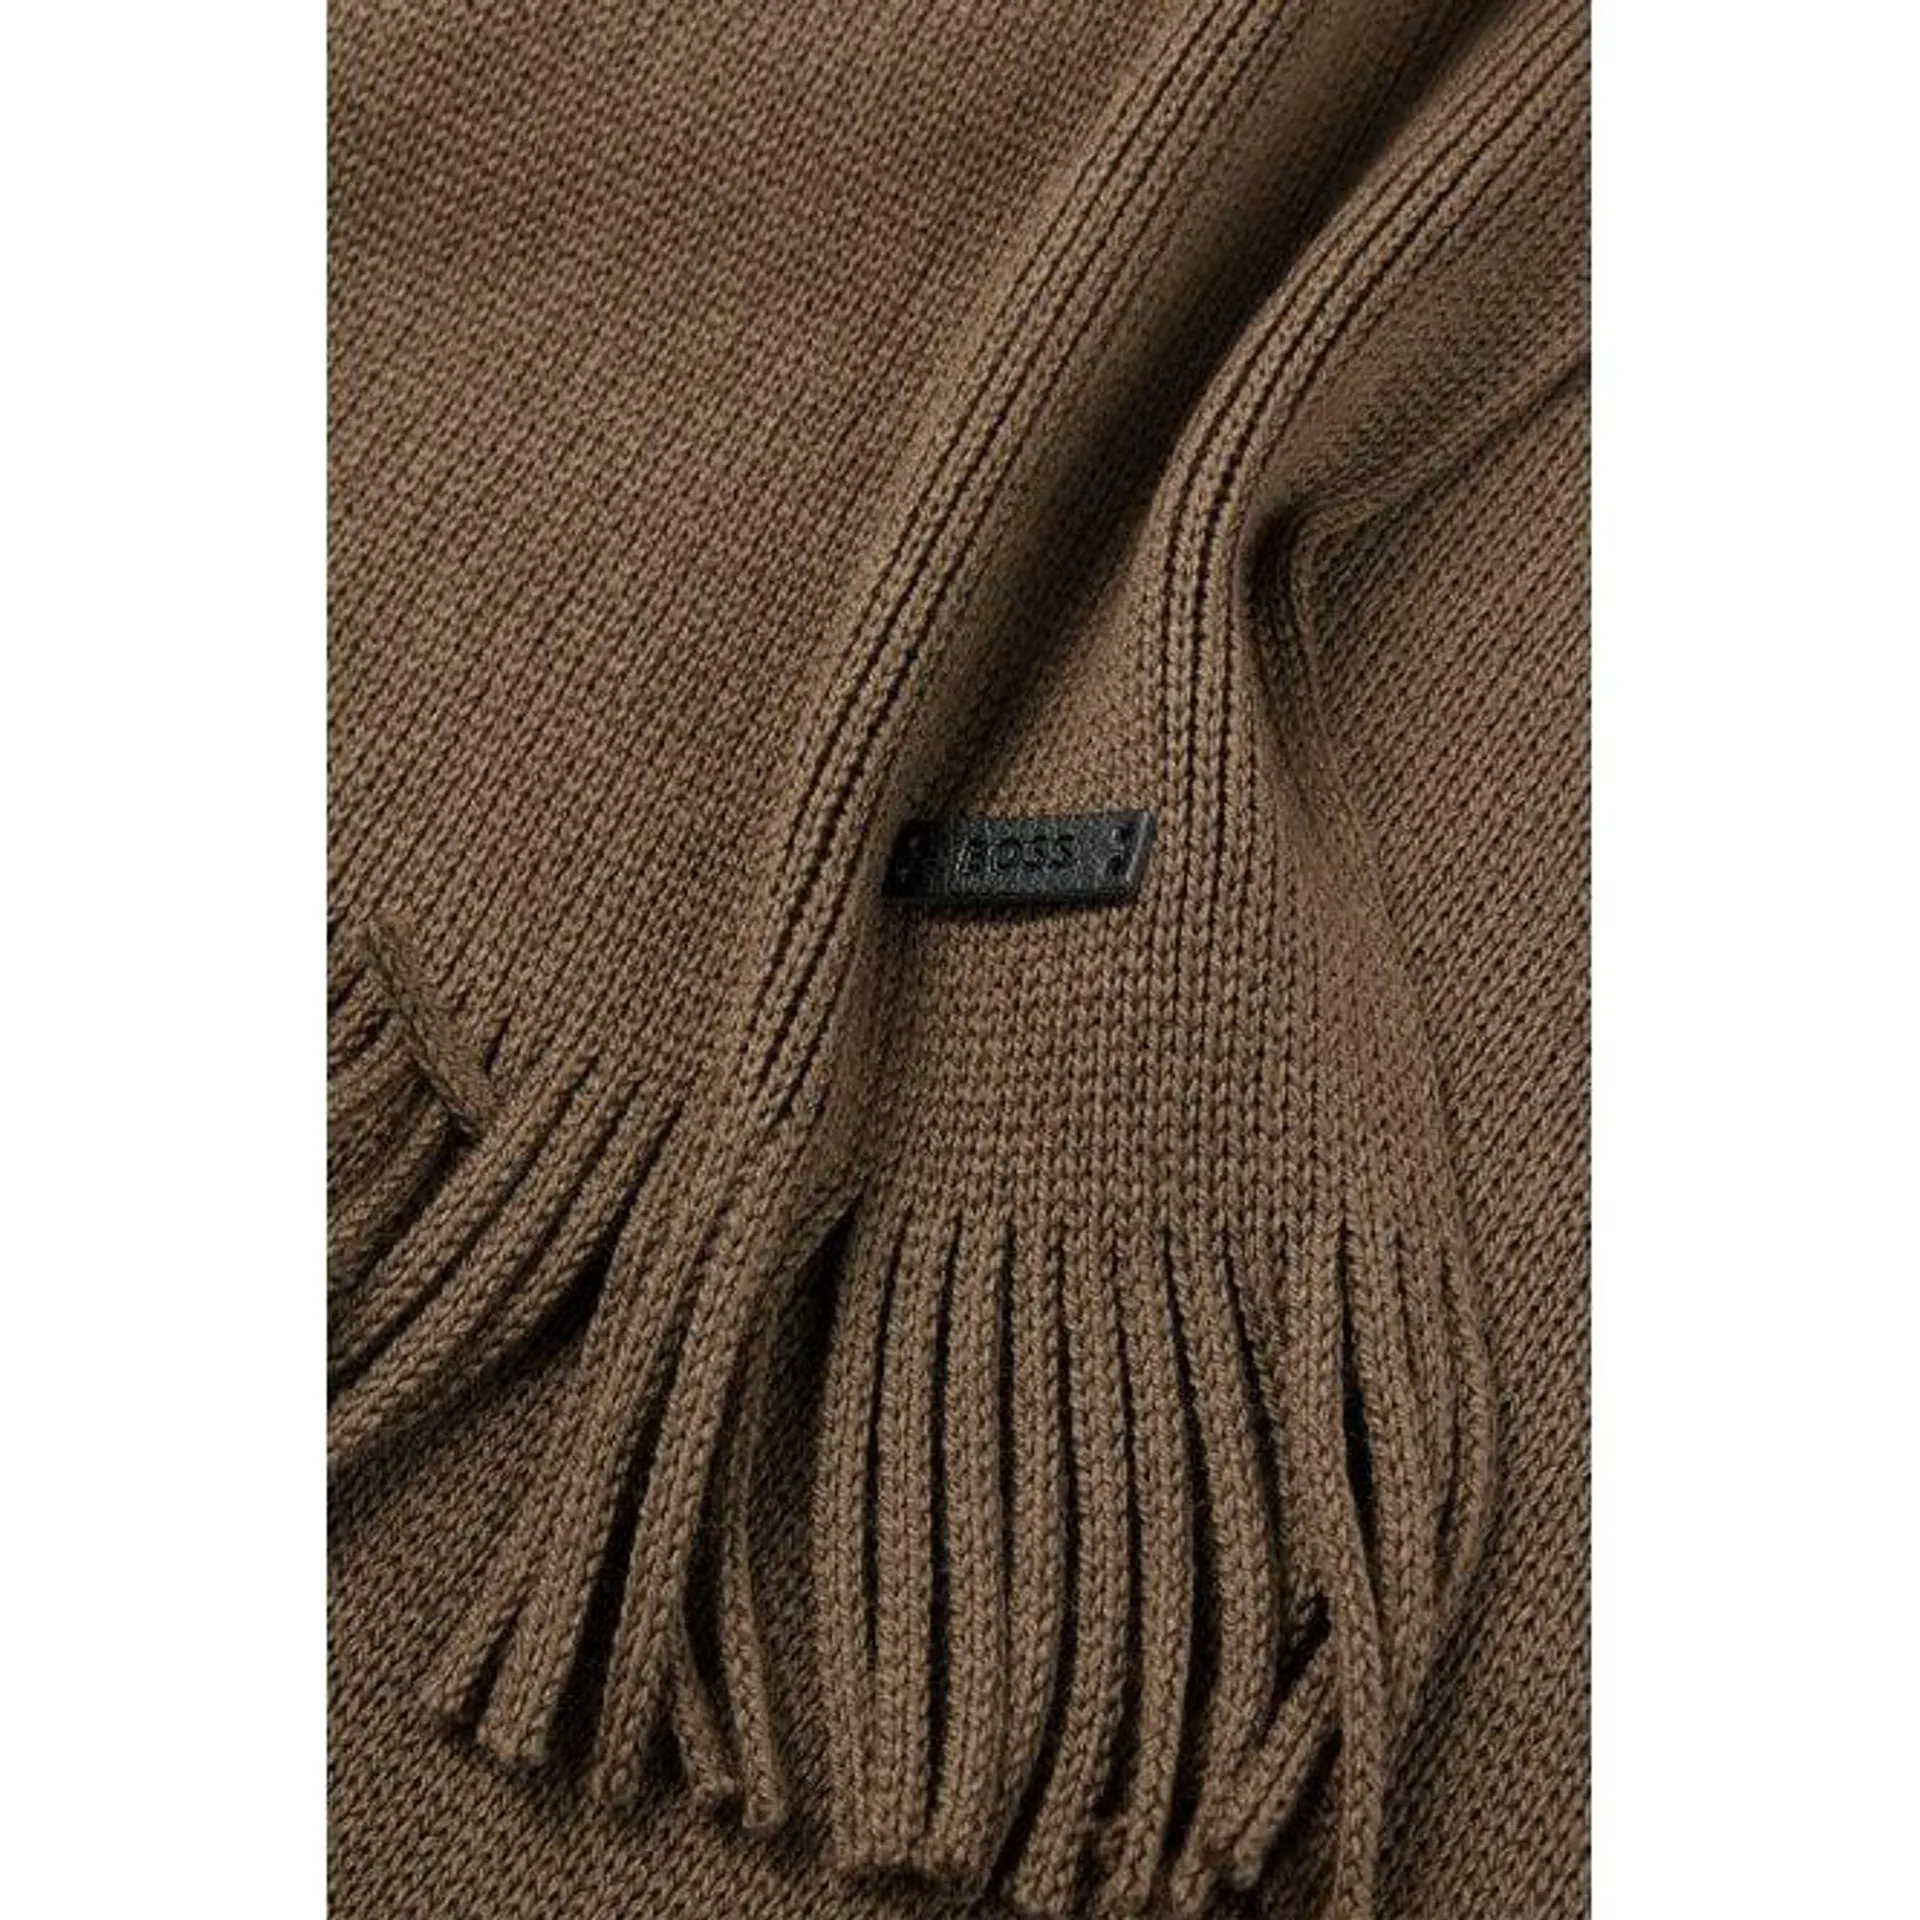 Albas-L Virgin Wool Scarf, Medium Beige